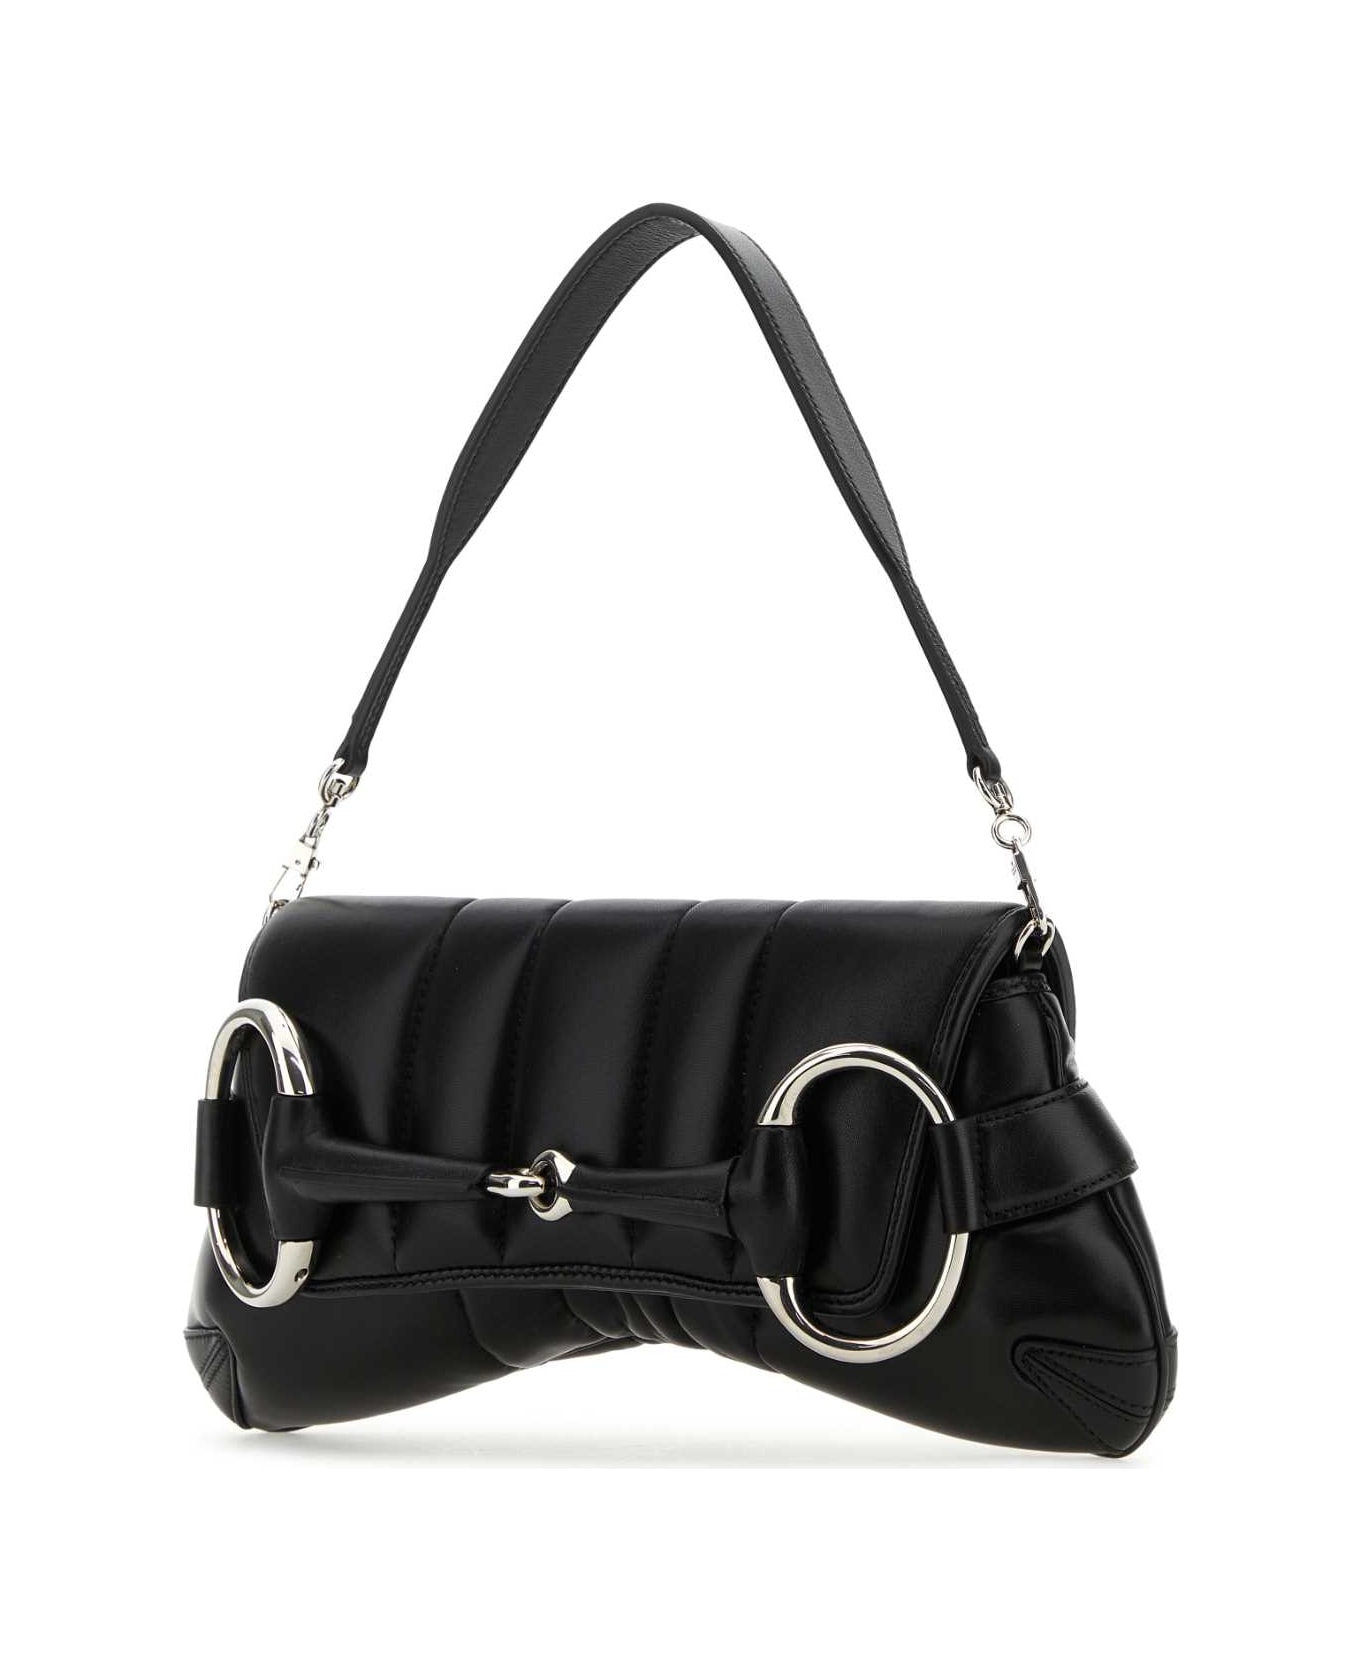 Gucci Black Medium Gucci Horsebit Chain Leather Shoulder Bag - 1000